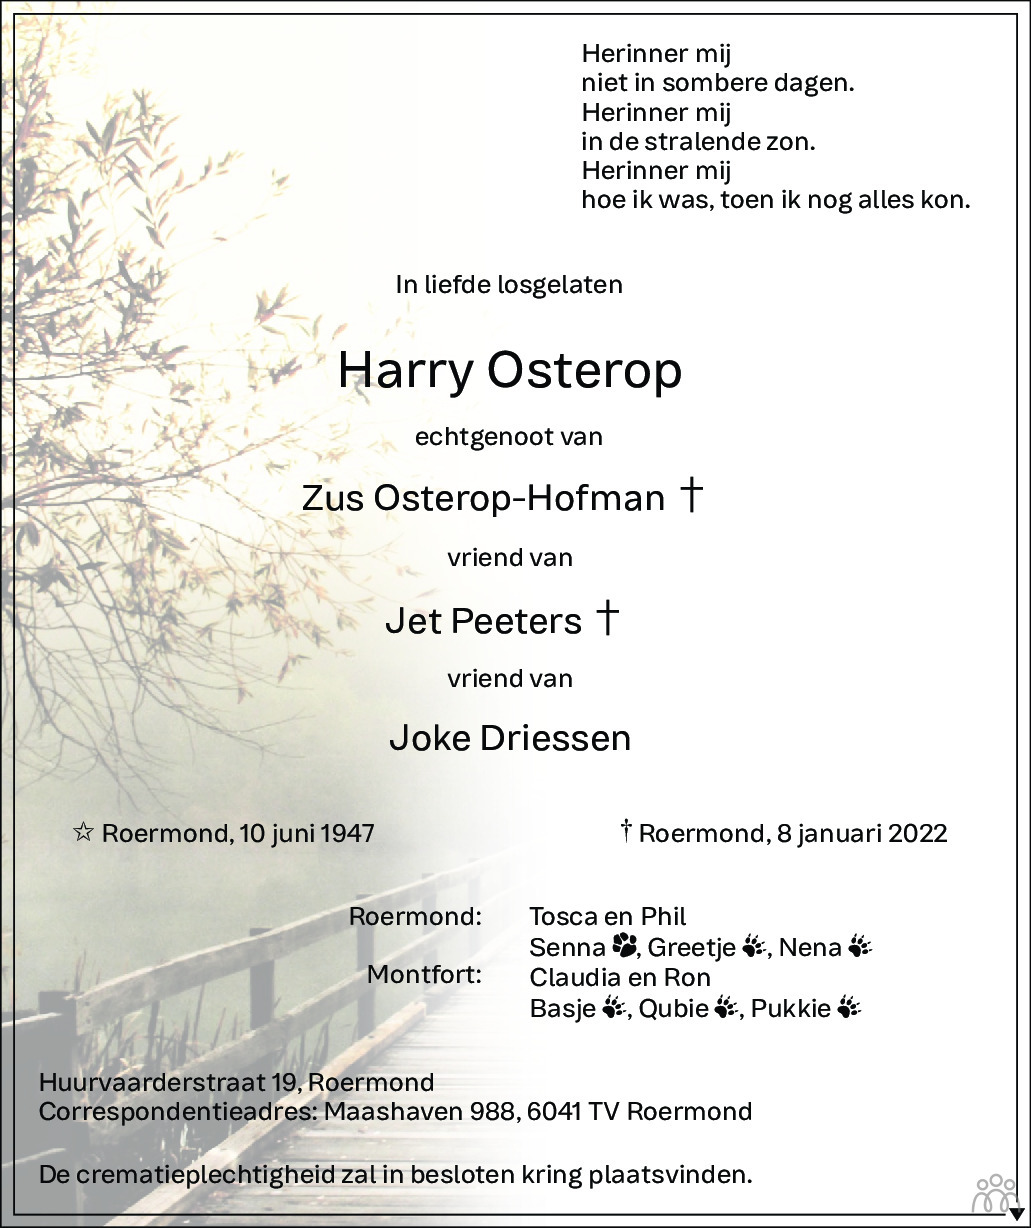 Overlijdensbericht van Harry Osterop in De Limburger